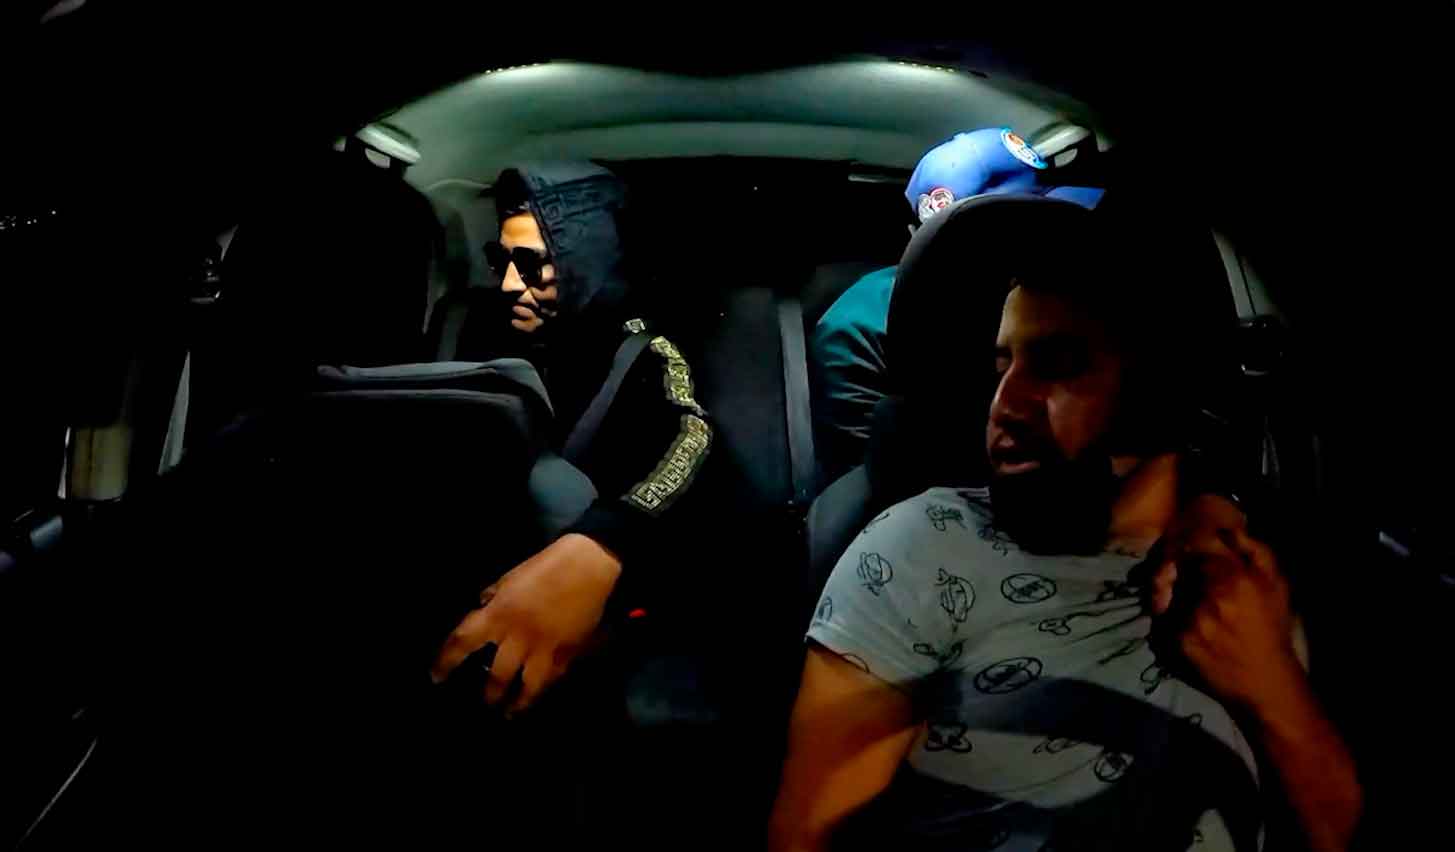 Motorista de aplicativo publica vídeo de assalto nas redes sociais para tentar achar bandidos